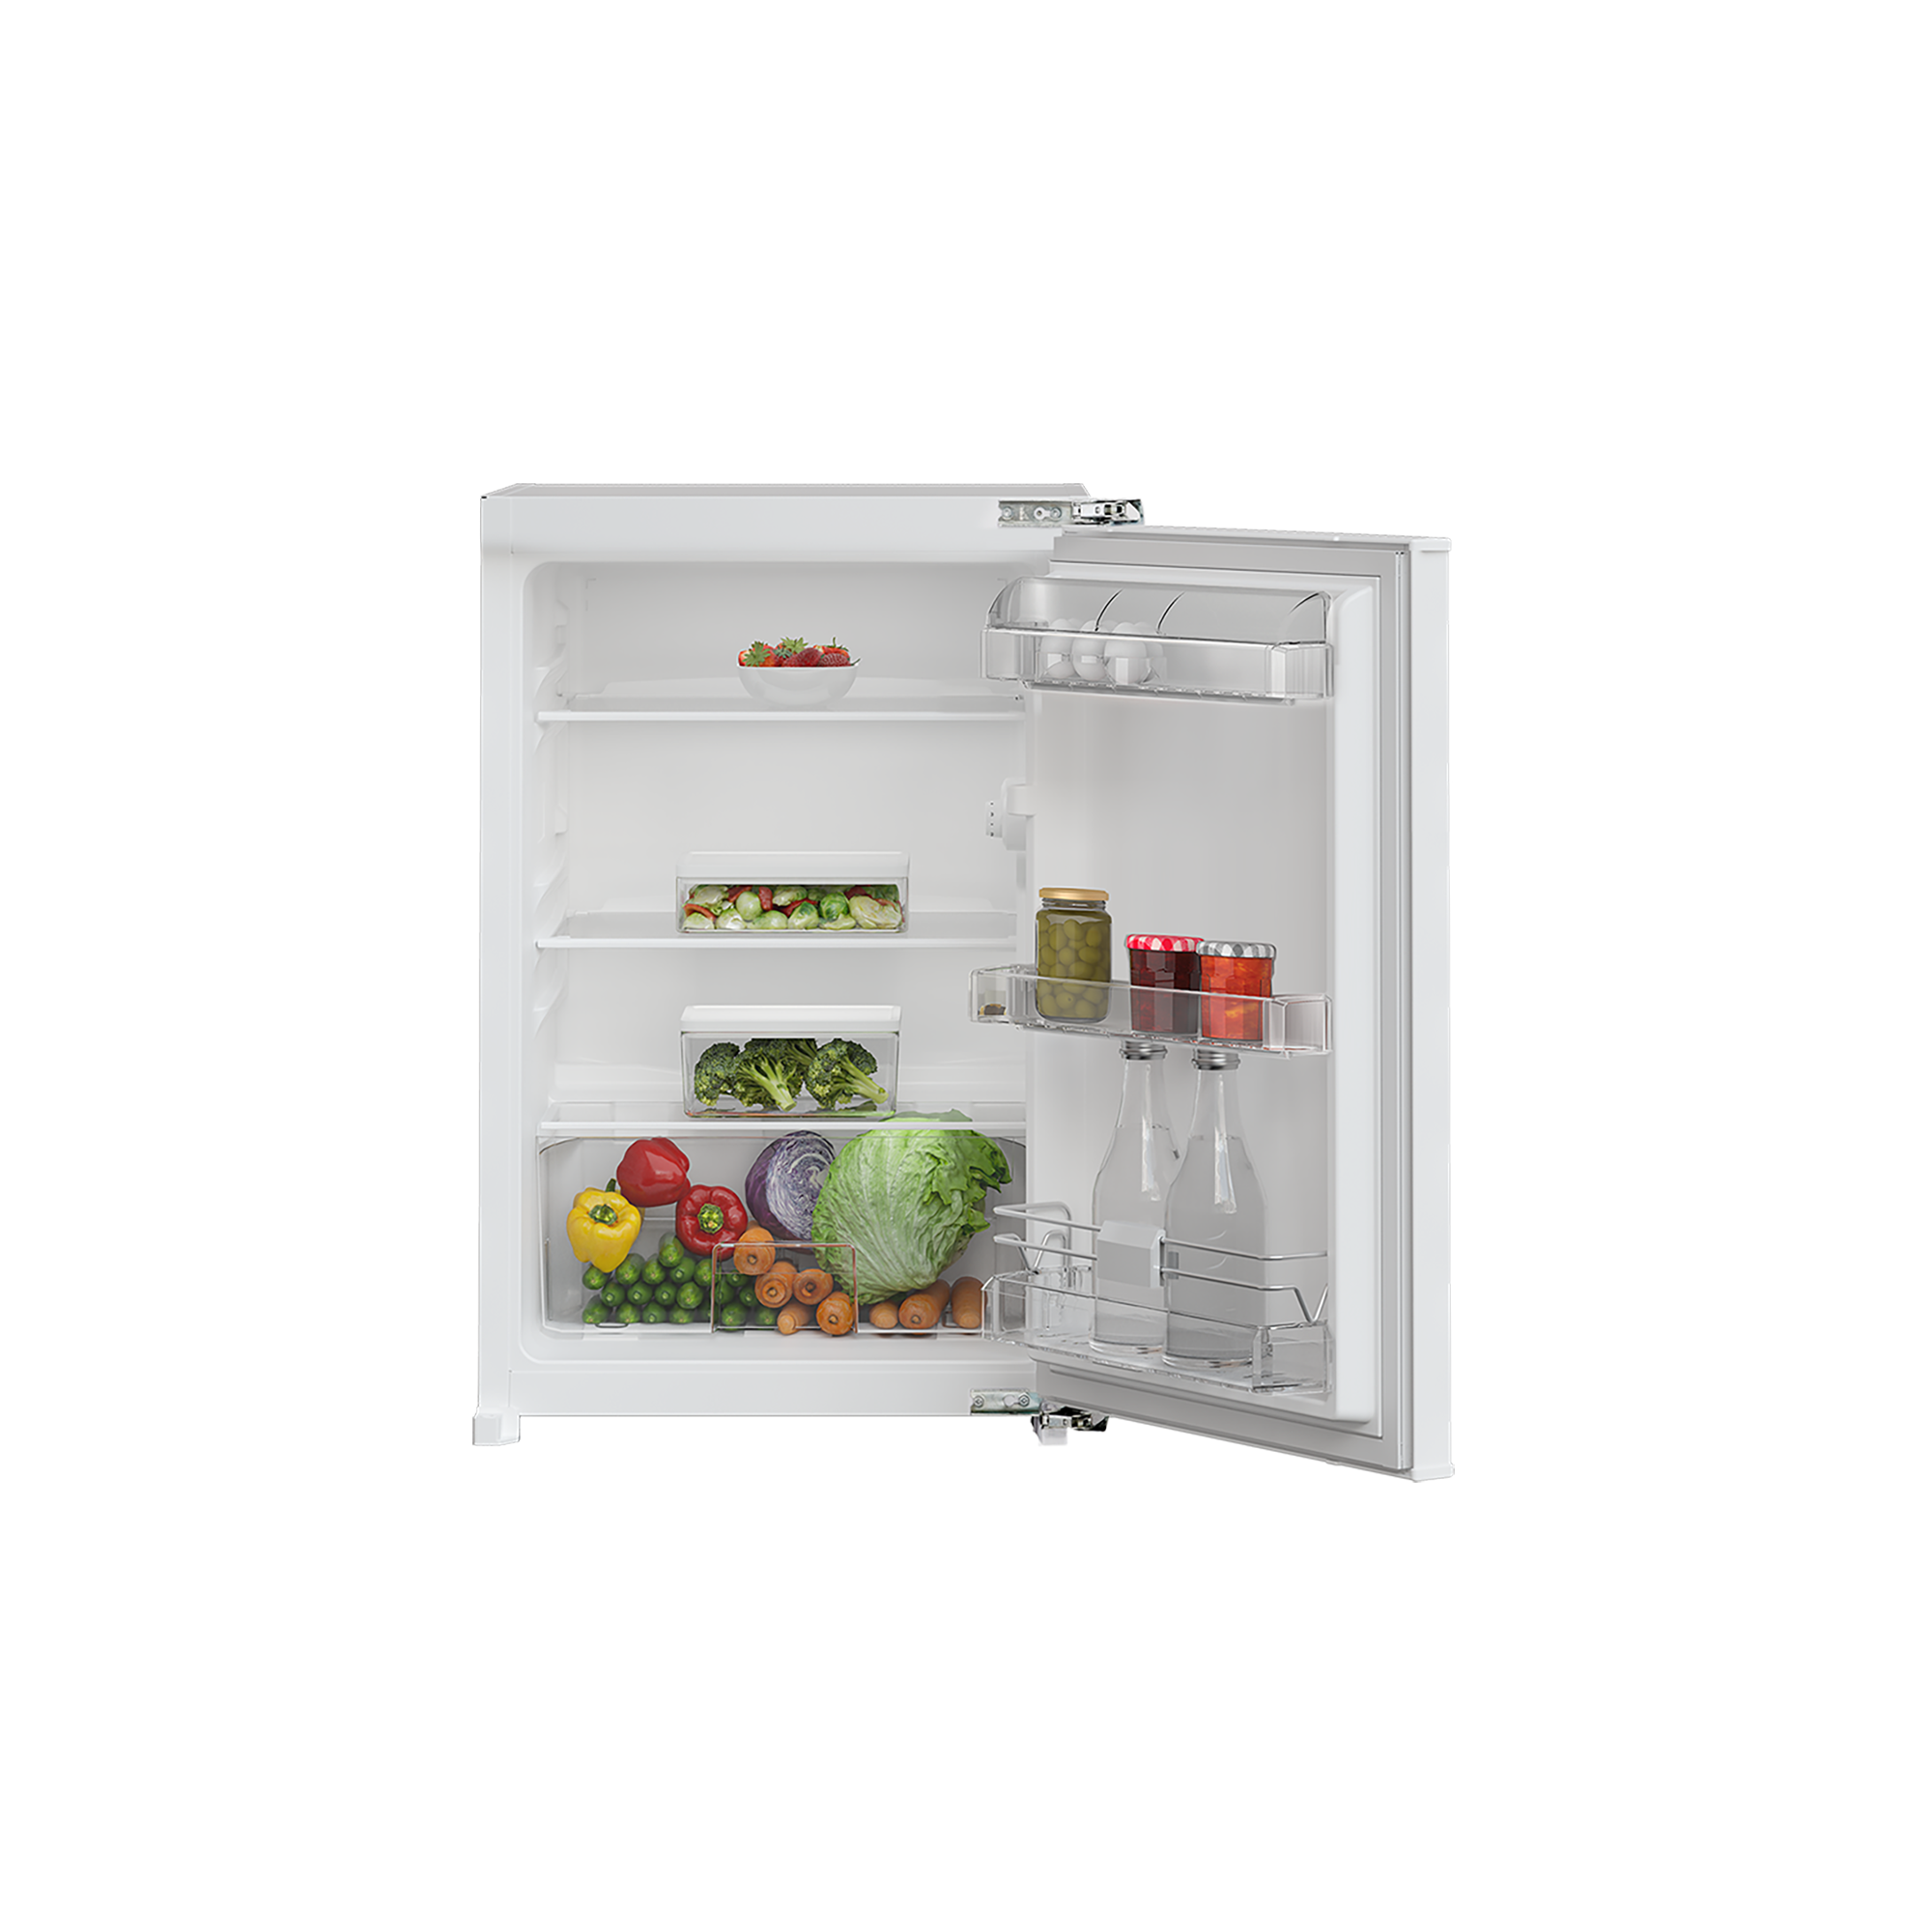 GTMI10141FN - Kühlschrank - jetzt kaufen | Kühlen & Gefrieren | Grundig